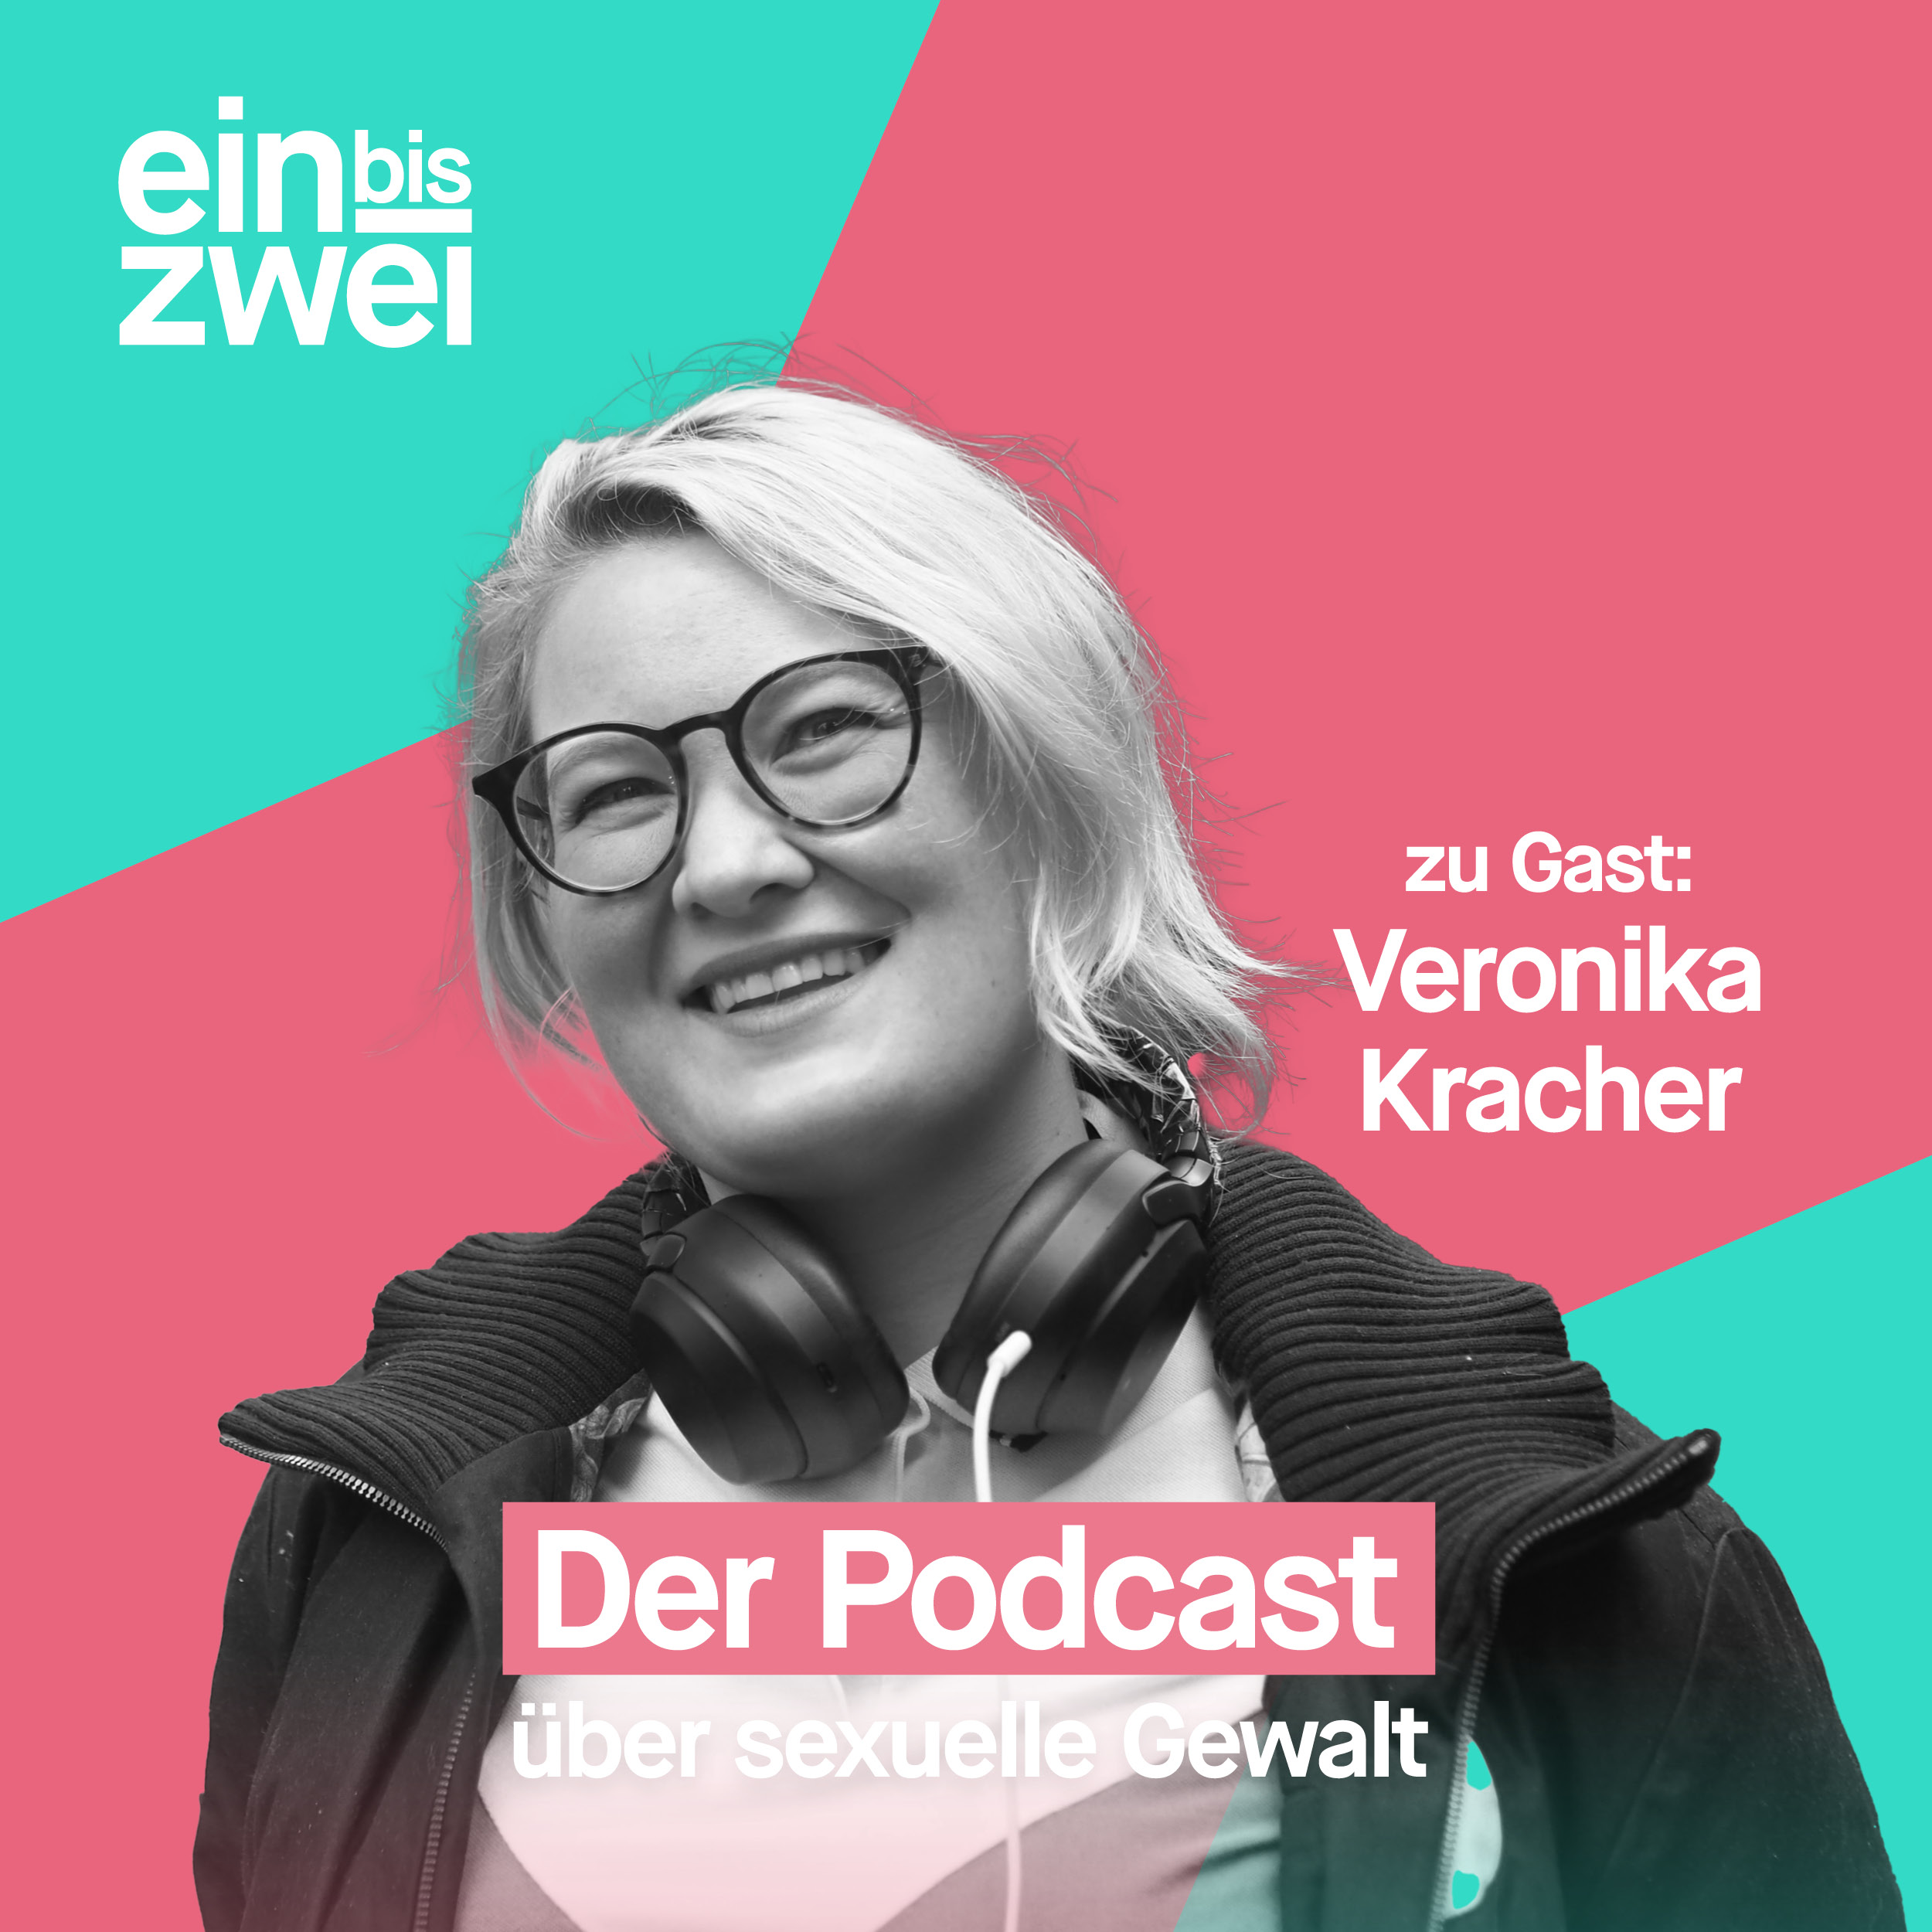 Veronika Kracher